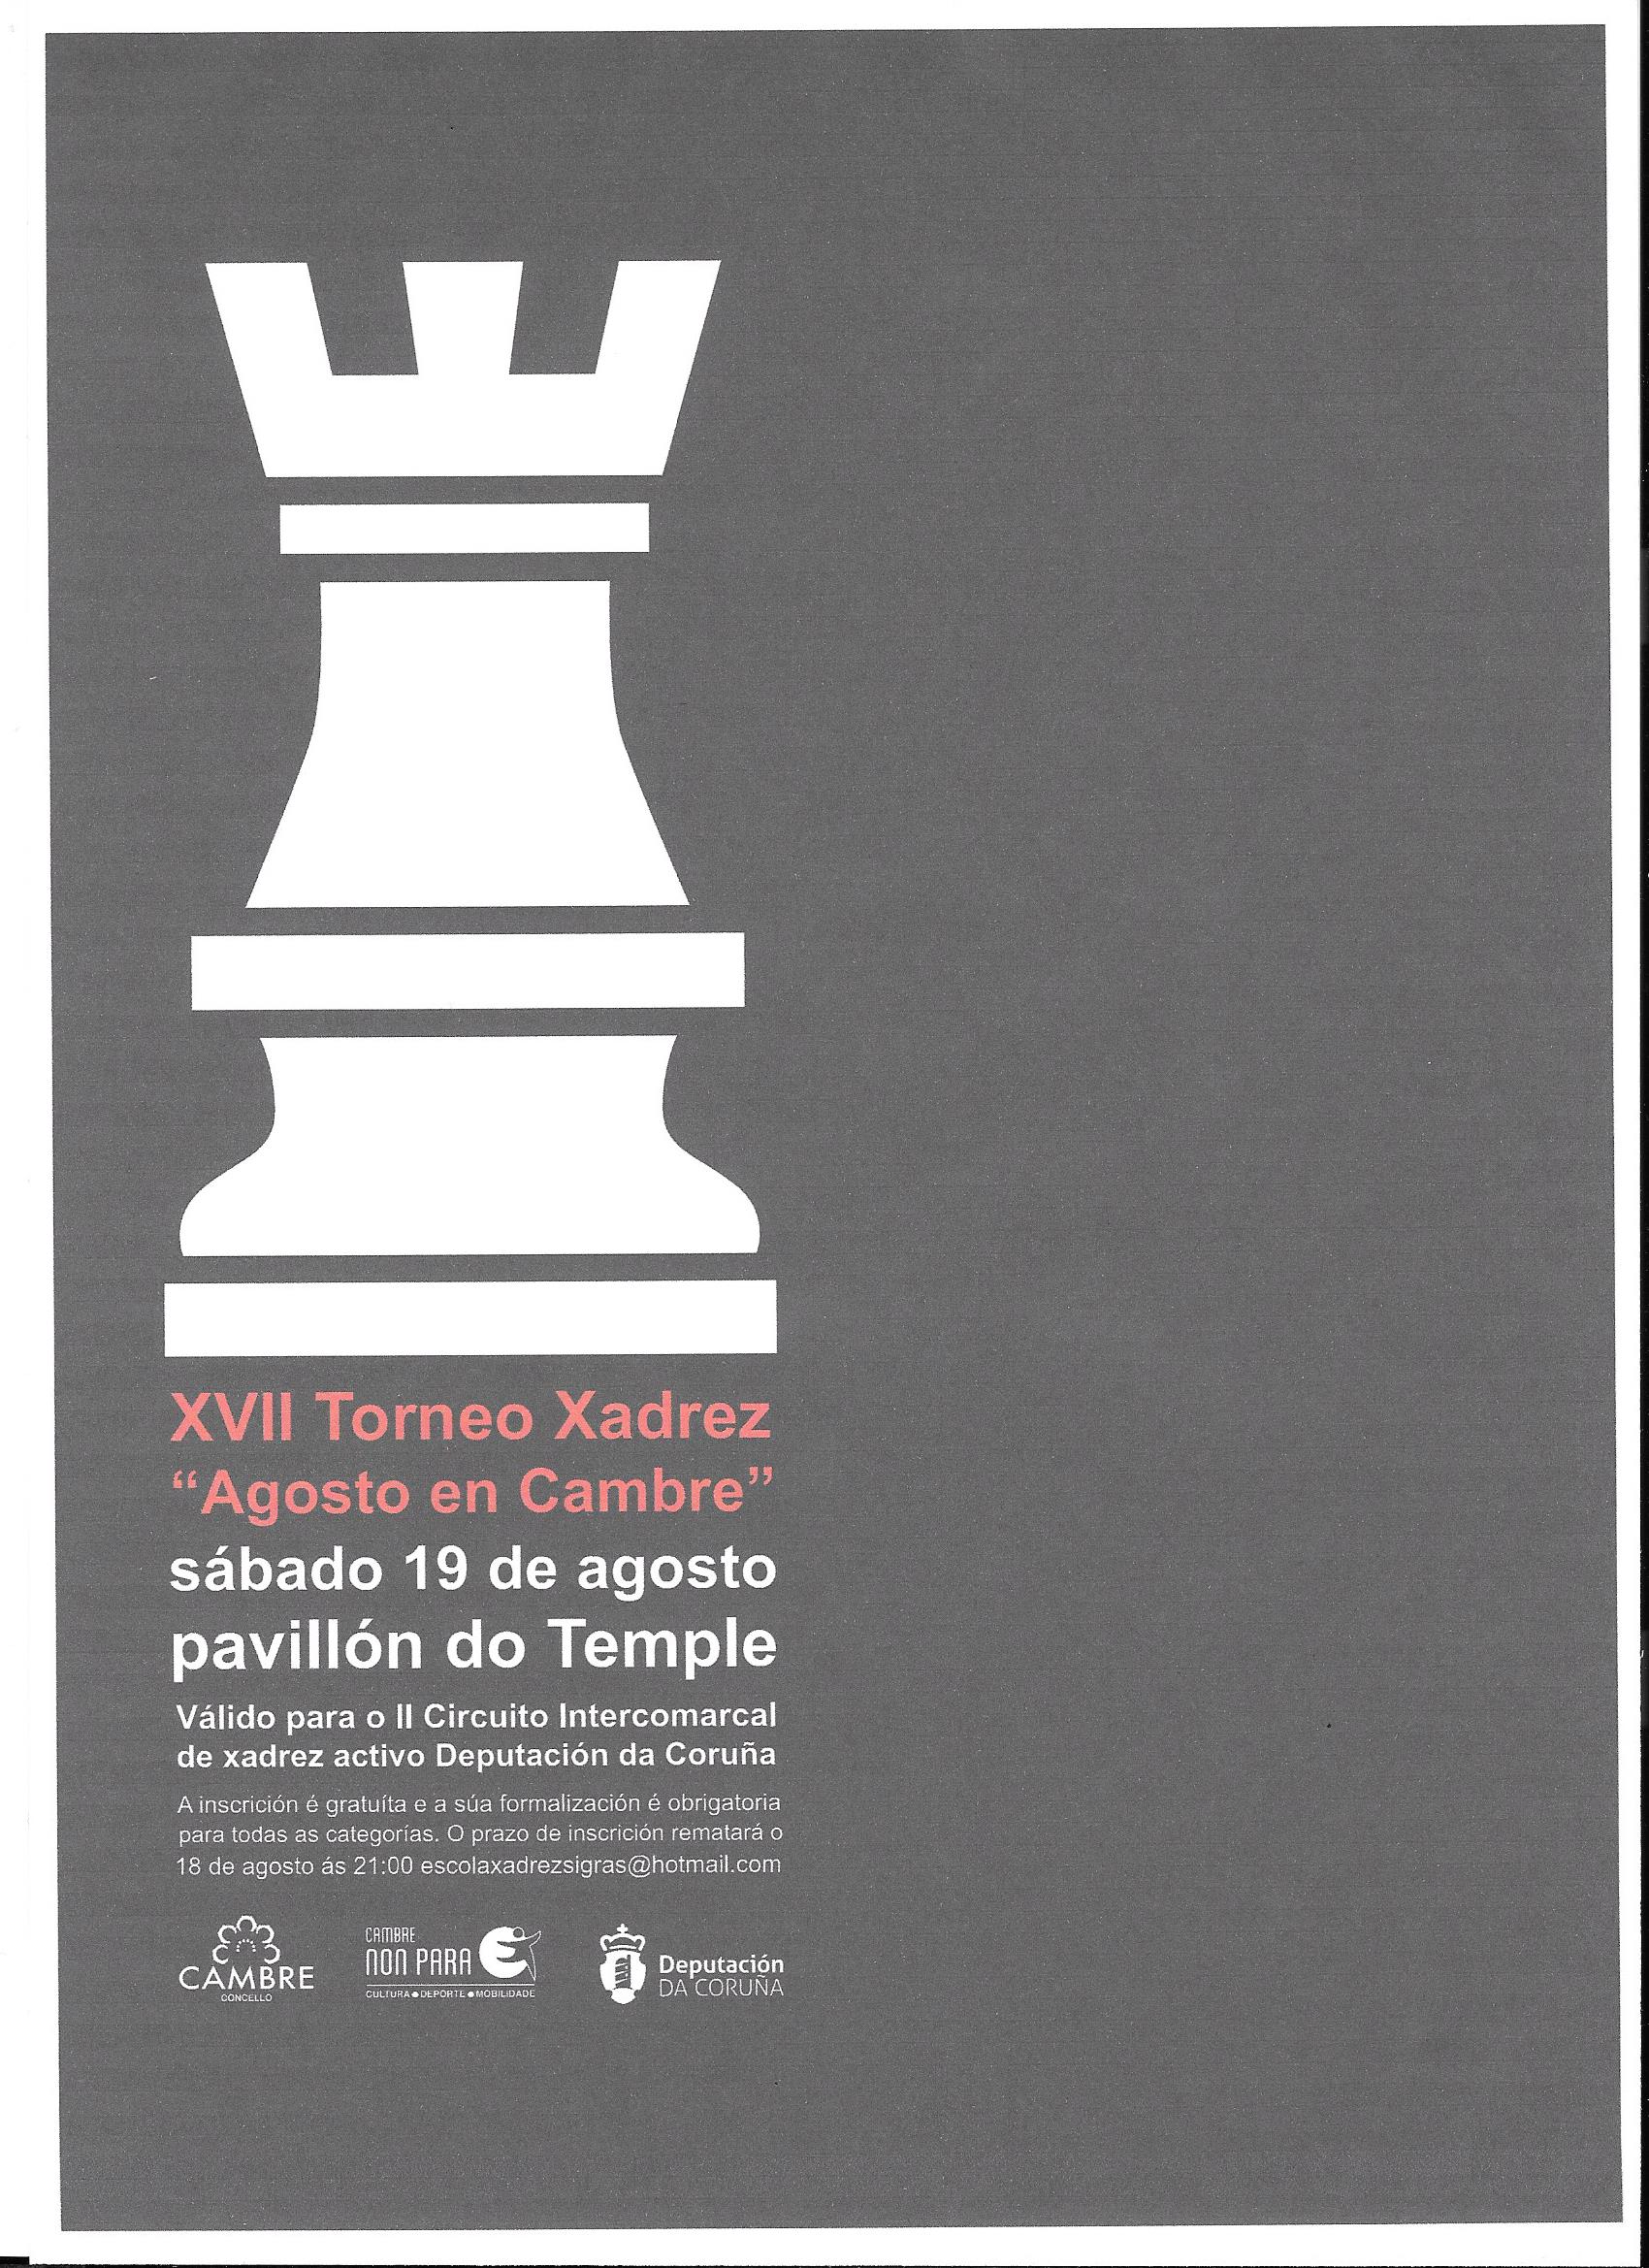 XVII Torneo de xadrez “Agosto en Cambre” – VI proba do II Circuito Intercomarcal